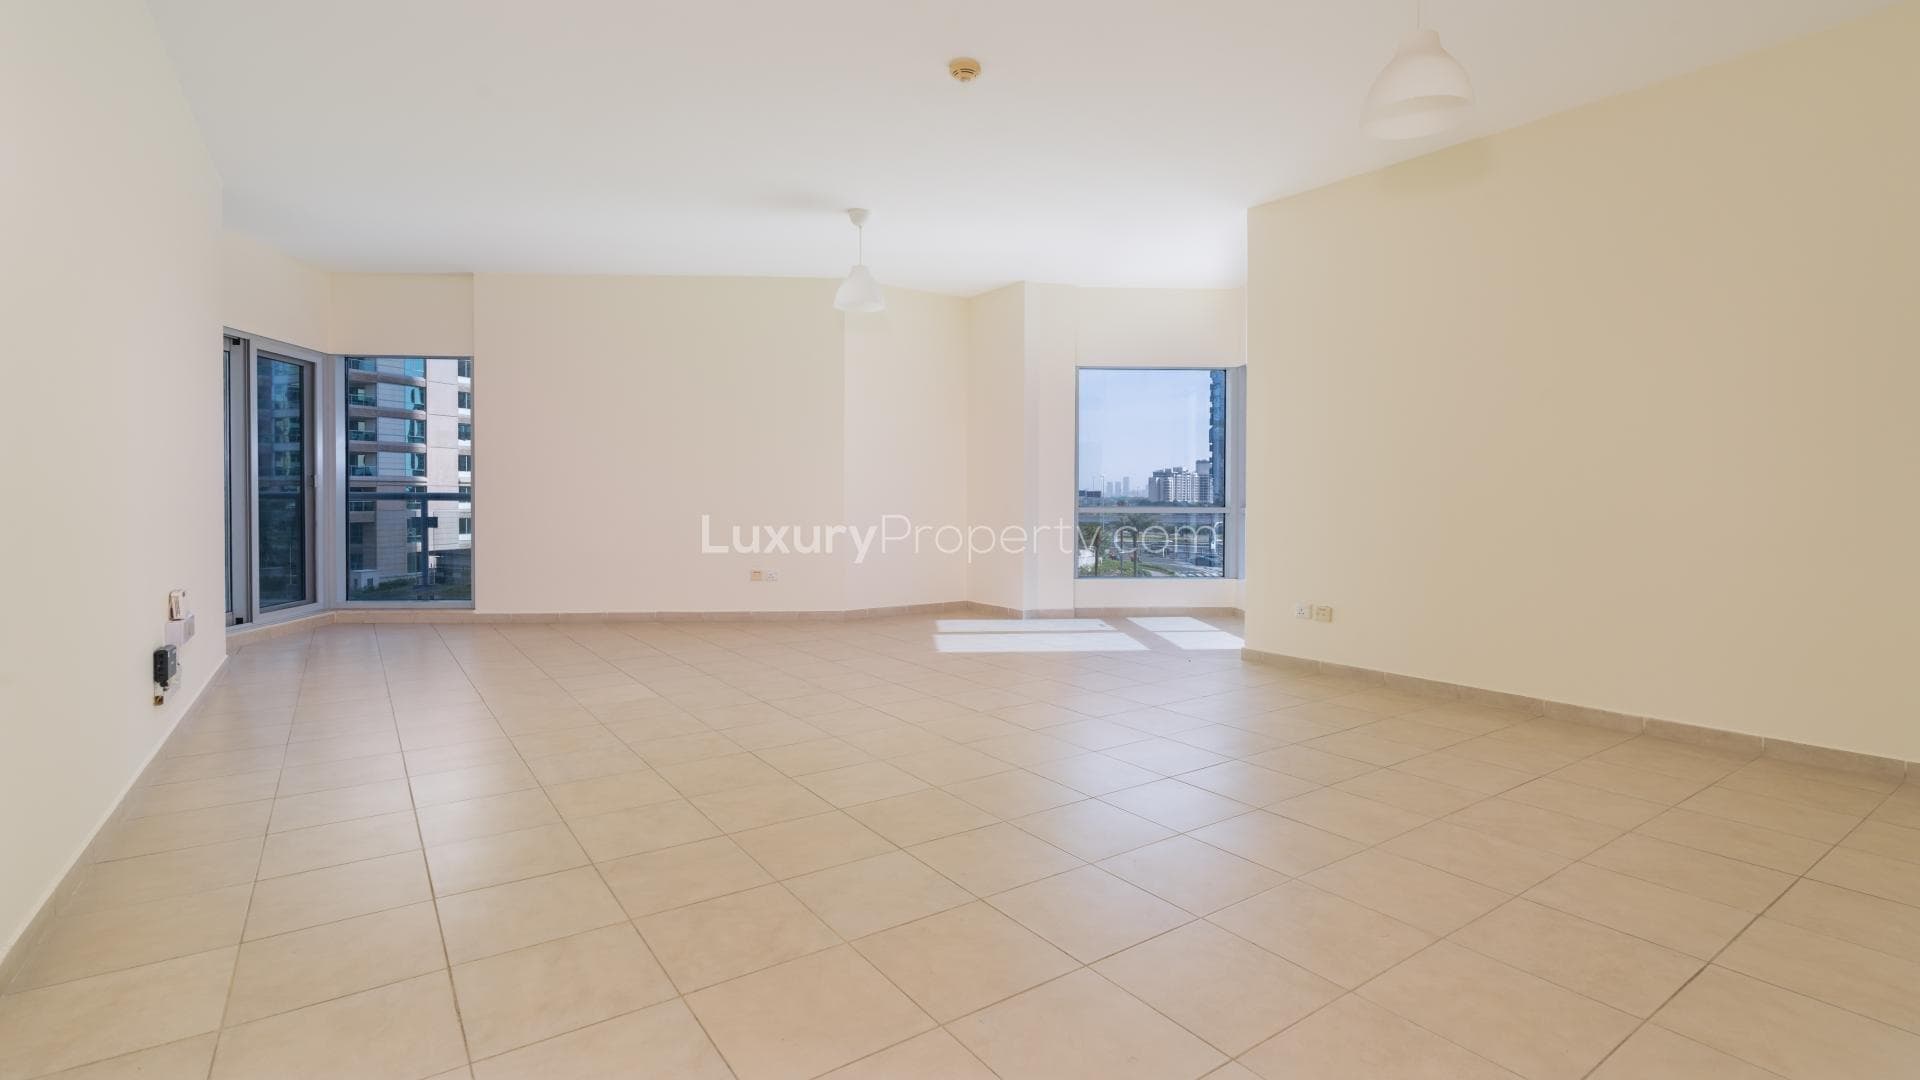 2 Bedroom Apartment For Rent Al Habtoor Tower Lp16576 30cab65f27172e00.jpg